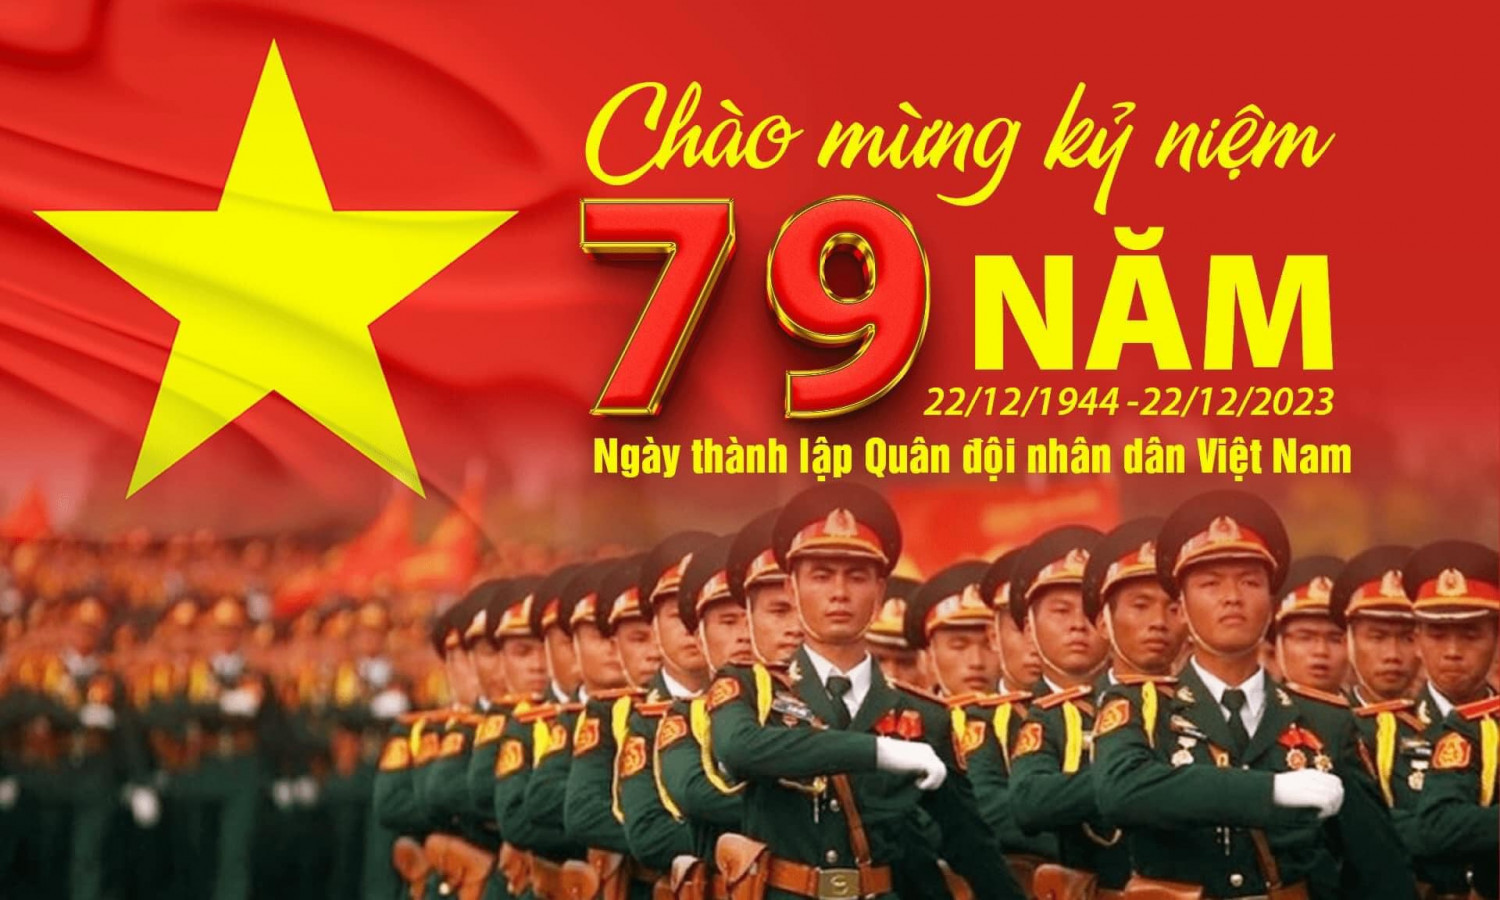 Chào mừng kỉ niệm 79 năm Ngày thành lập Quân đội Nhân dân Việt Nam (22/12/1944 - 22/12/2023).